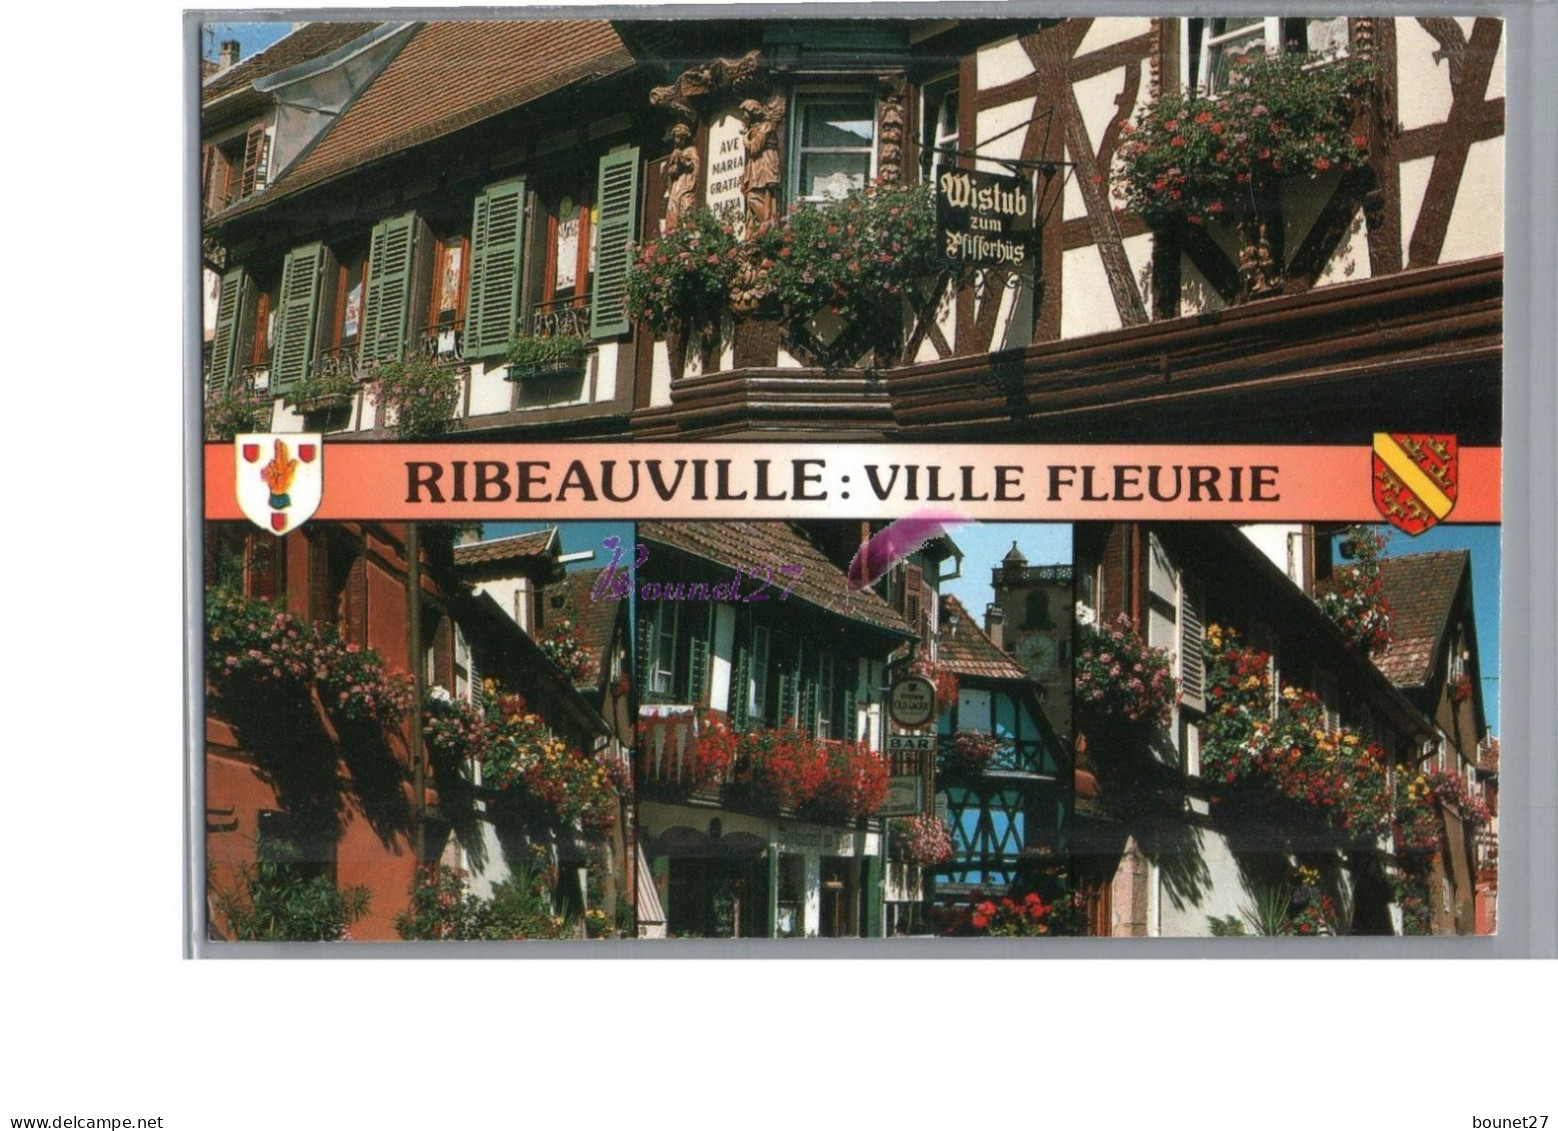 RIBEAUVILLE 68 - Au Cœur Du Vignoble Alsacien Ribeauvillé Avec Ses Ruelles Et Ses Maison à Colombage Ville Fleurie - Ribeauvillé